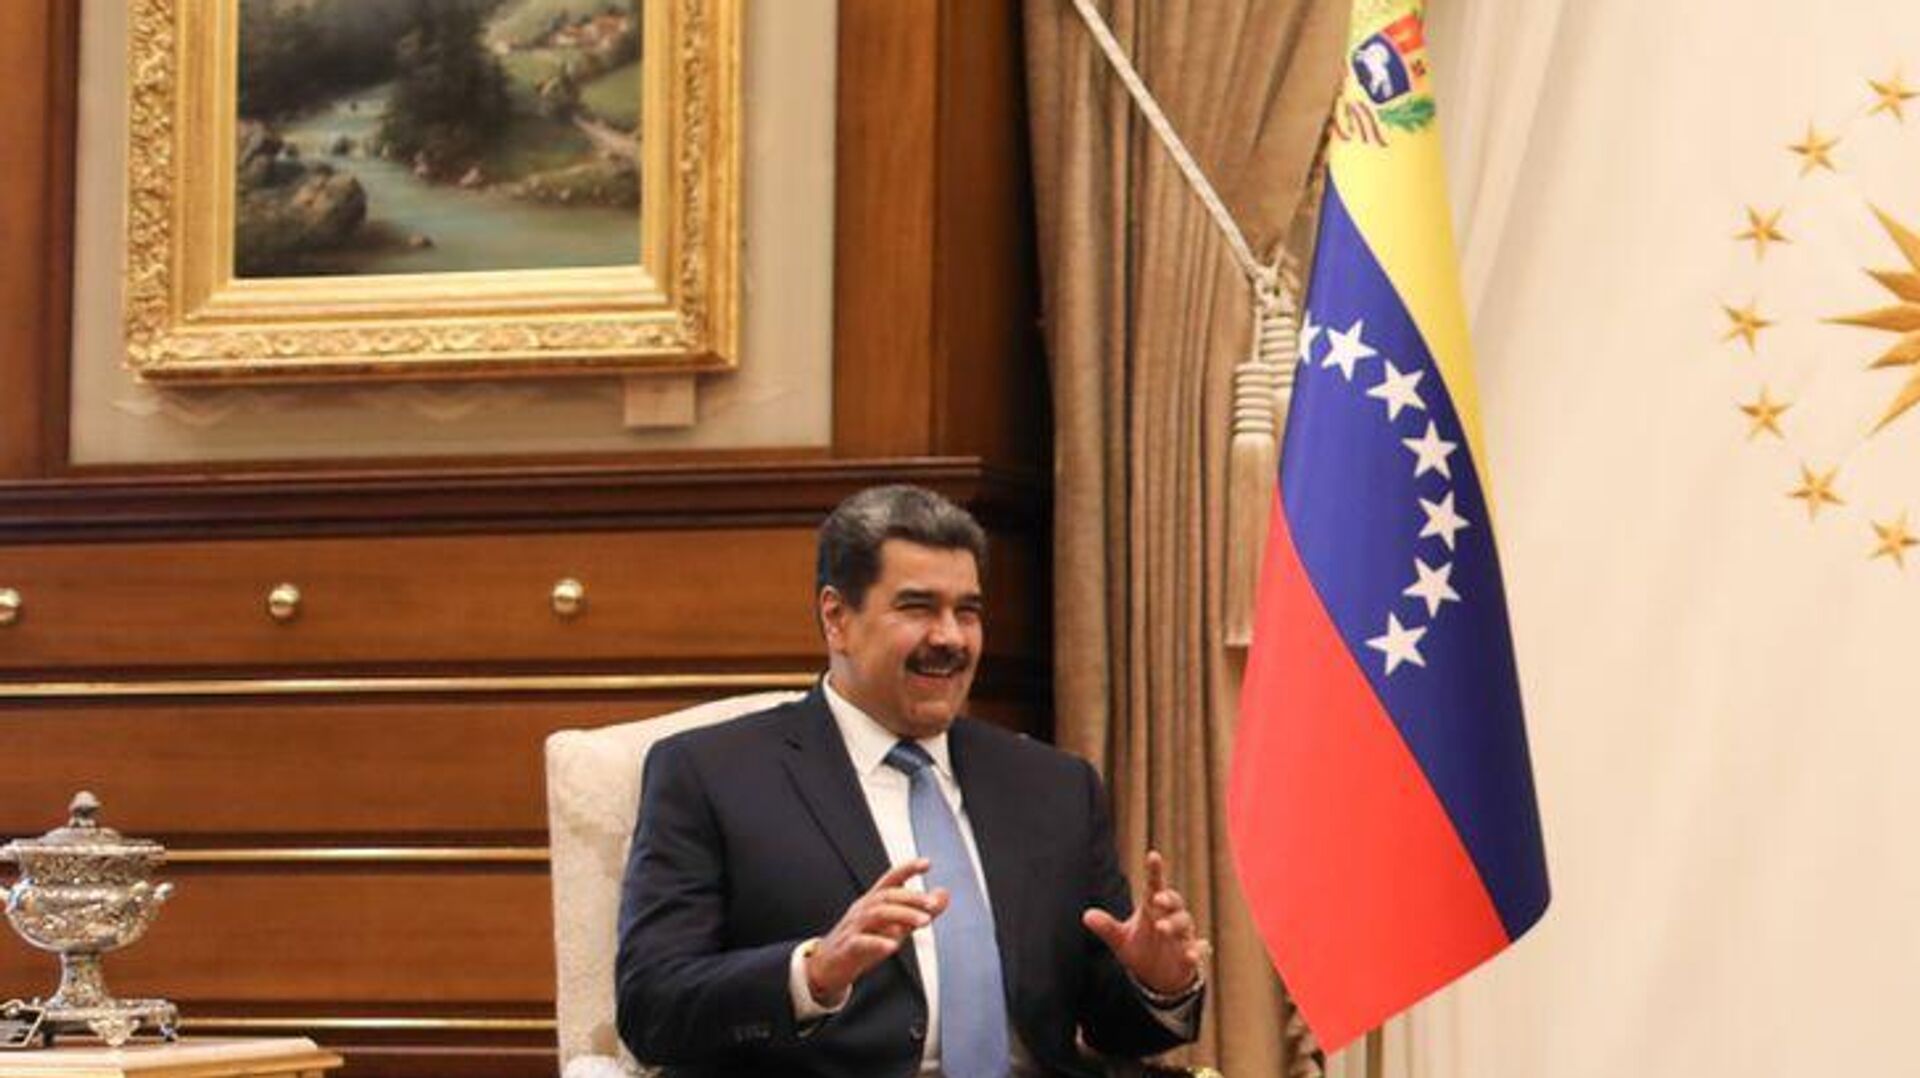 El presidente de Venezuela, Nicolás Maduro, visita oficial a Turquía  - Sputnik Mundo, 1920, 09.06.2022